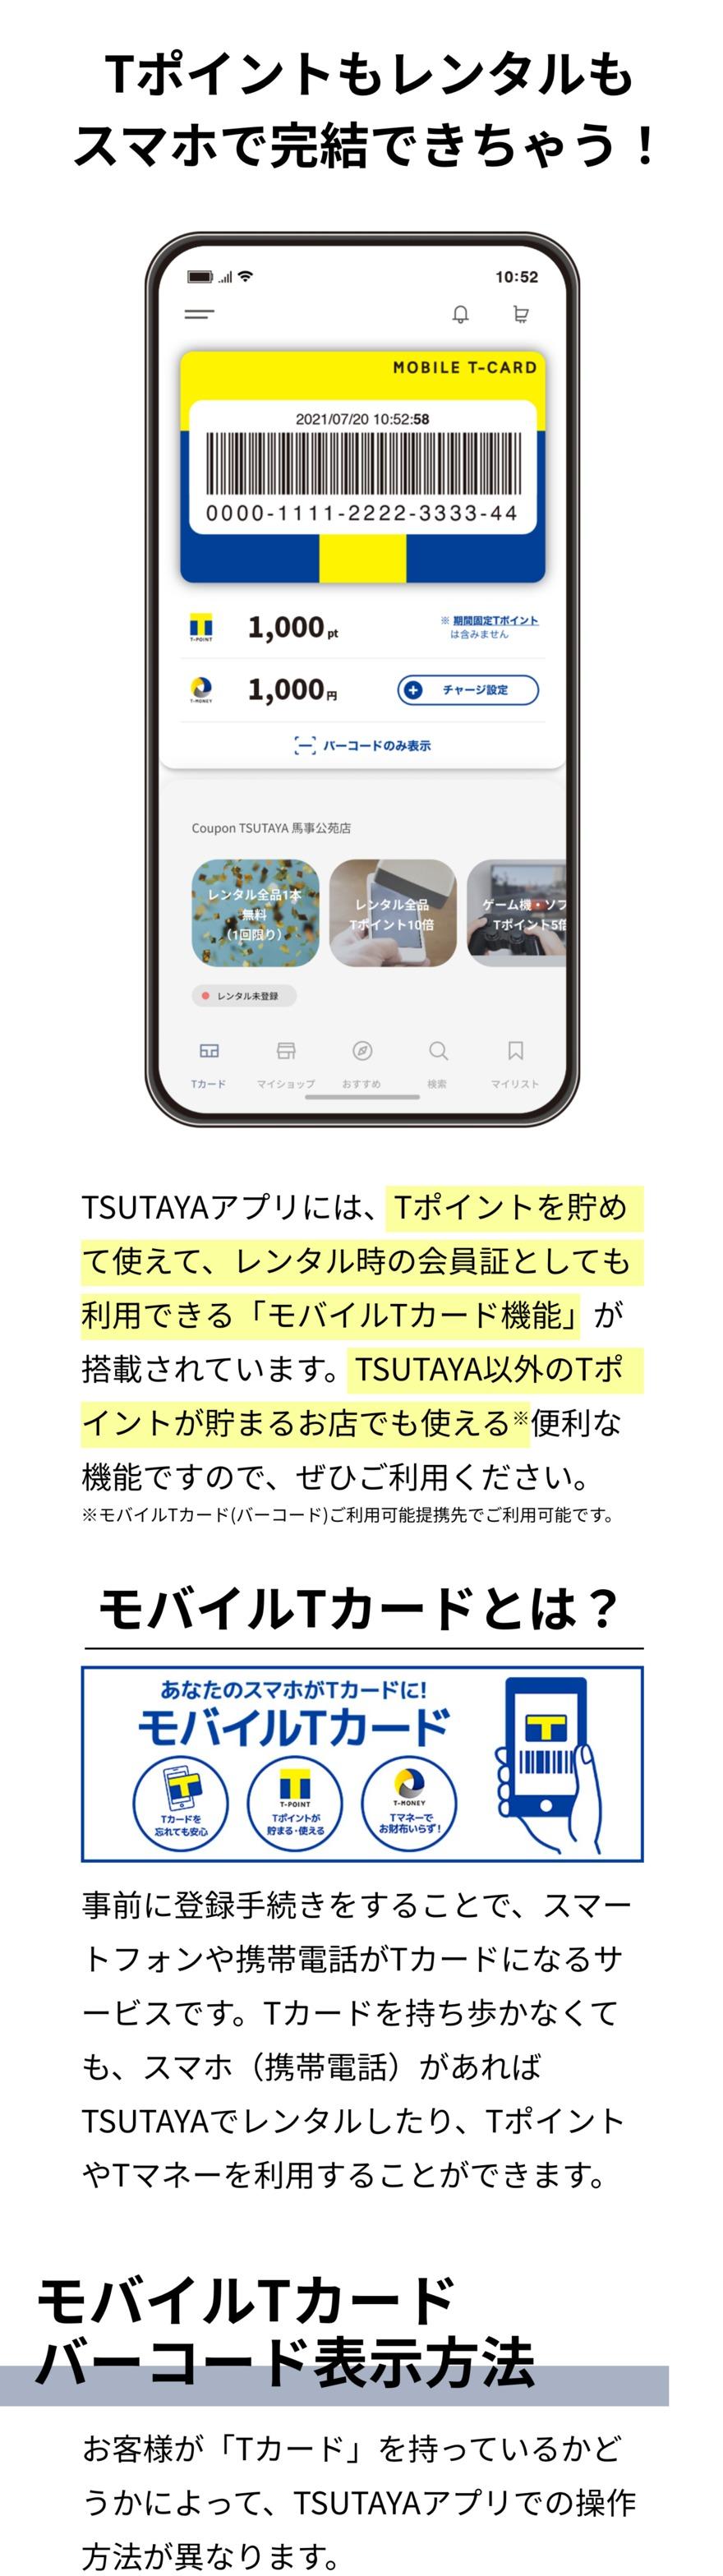  TSUTAYAアプリのモバイルTカードは、レンタル利用時の会員証として利用することができます。ぜひ、事前に登録手続きをしてTSUTAYAのカードレス生活を楽しみましょう。